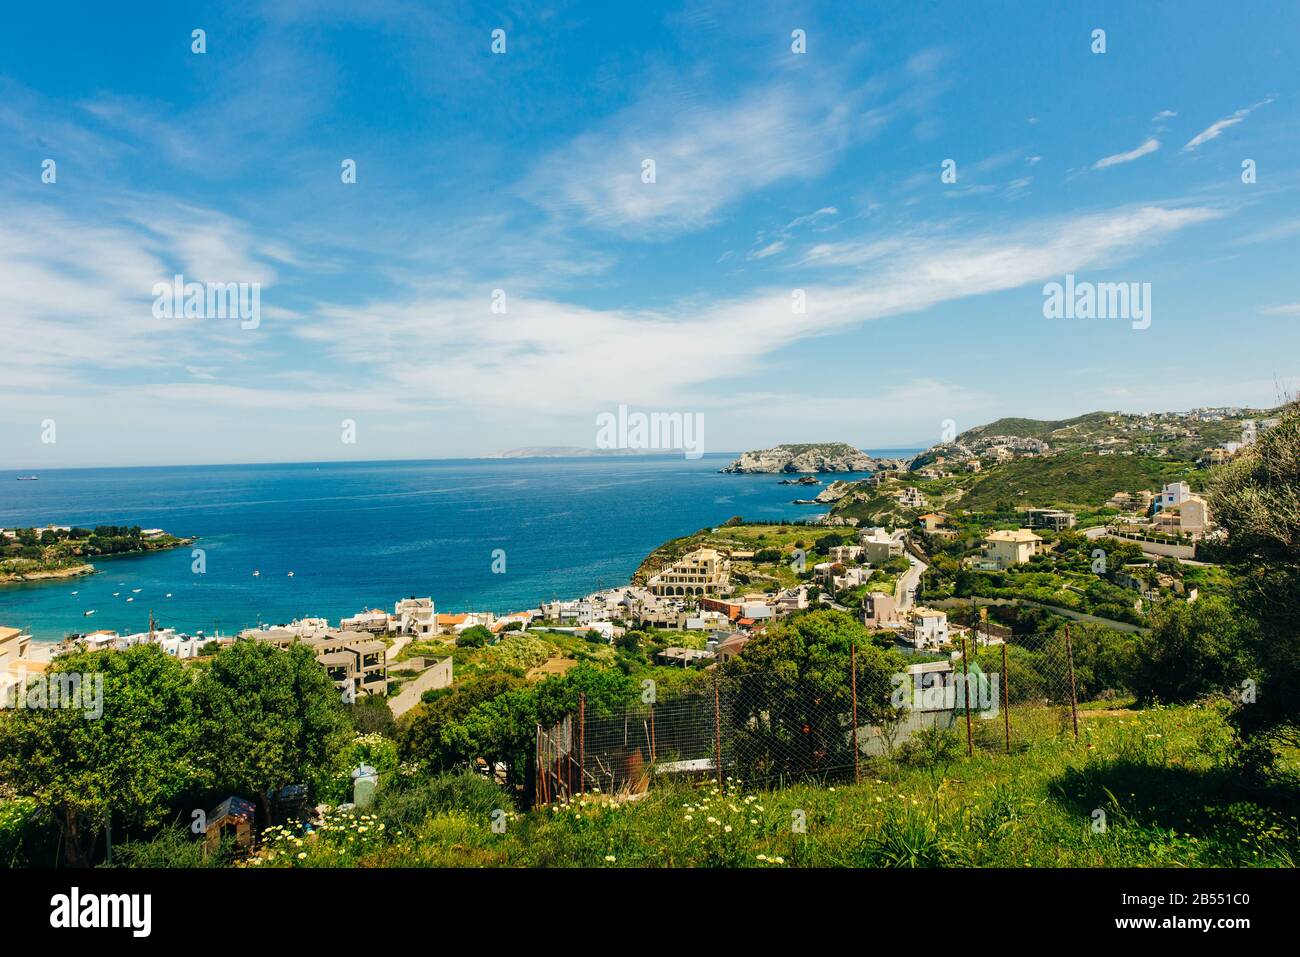 Le petit village avec des plages uniques et la célèbre station balnéaire d'Agia Pelagia, Héraklion, Crète, Grèce. Banque D'Images